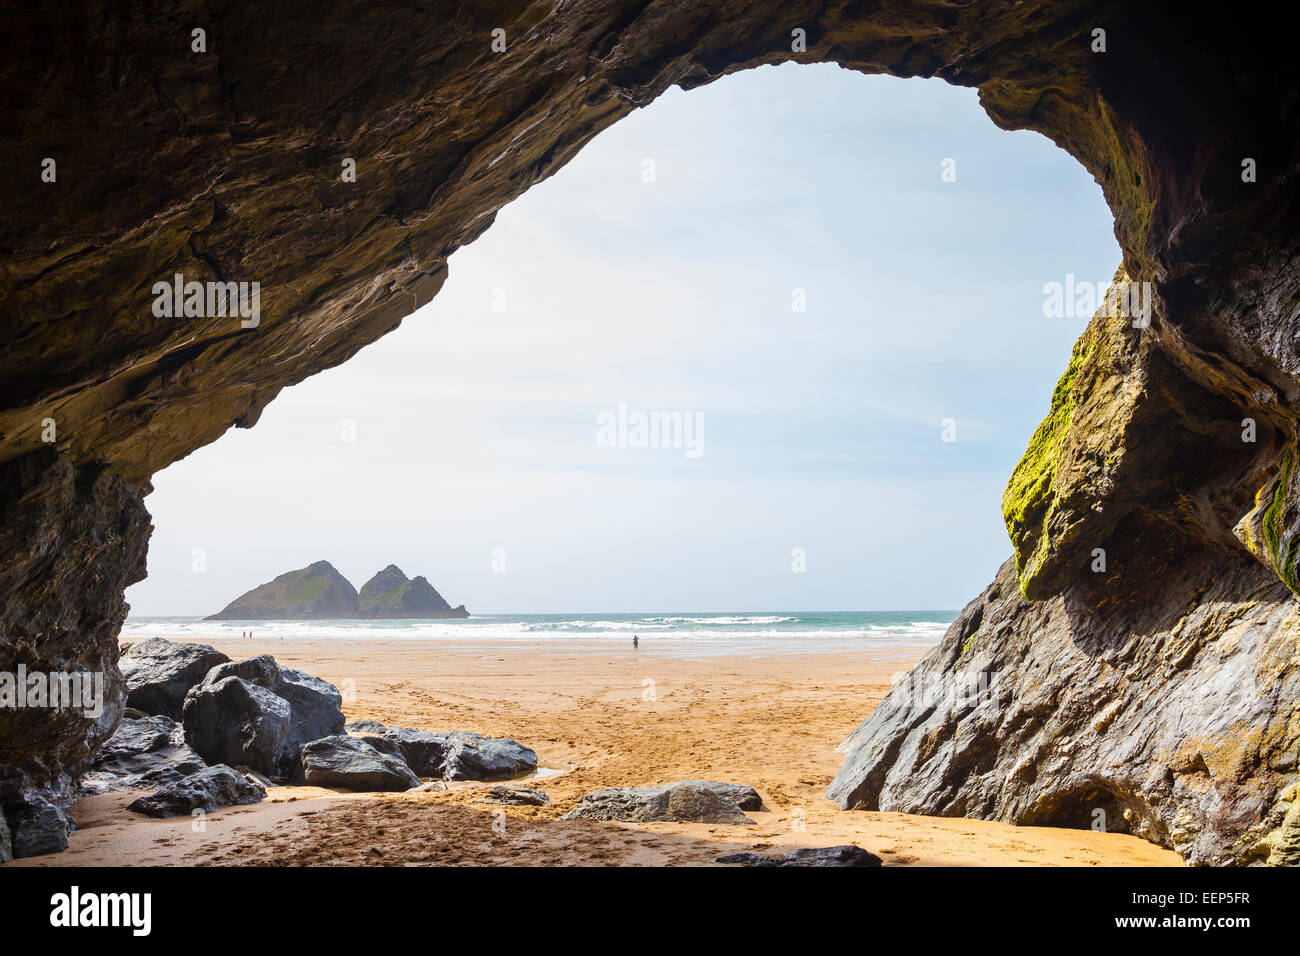 Grande Grotte sur la plage de sable doré à Baie de Holywell Cornwall England UK Europe Banque D'Images